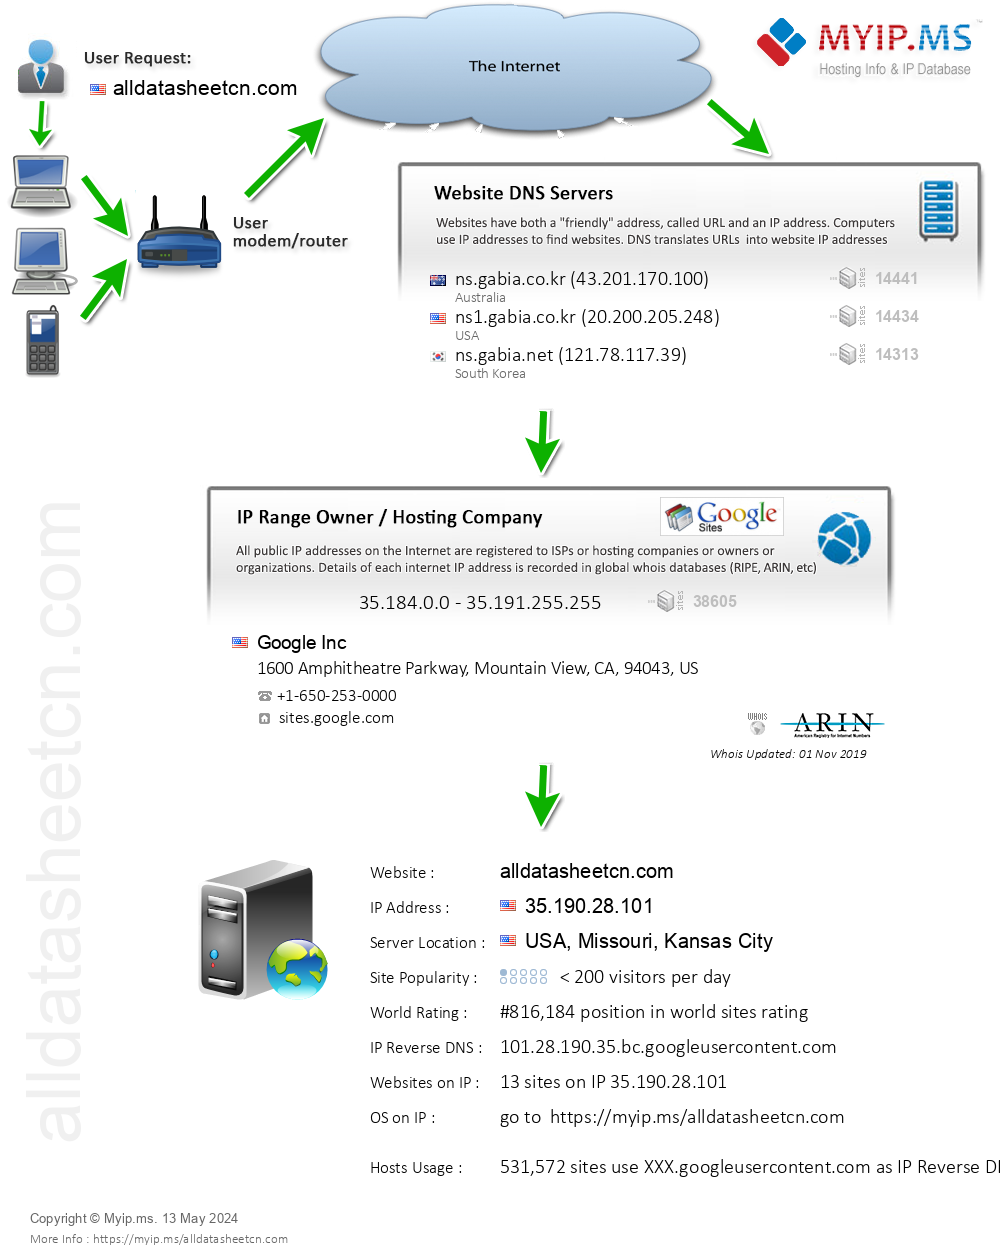 Alldatasheetcn.com - Website Hosting Visual IP Diagram